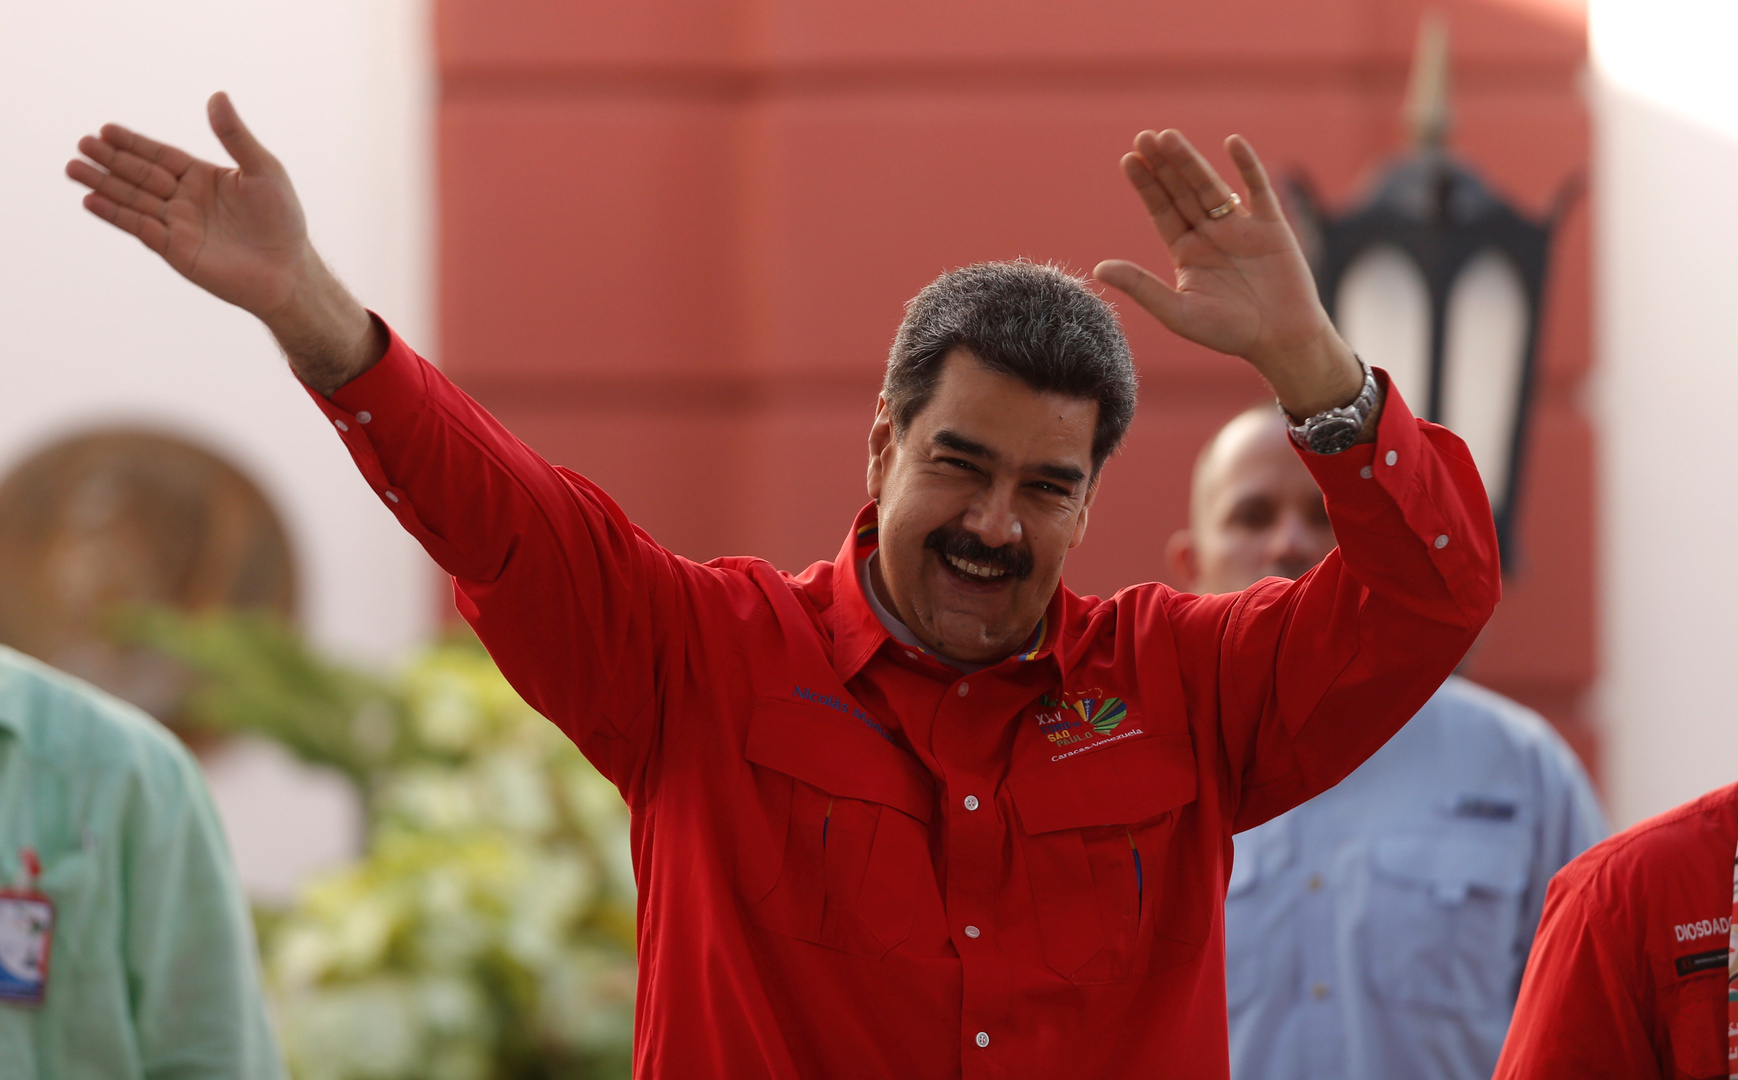 مادورو: الوقت حان للتفاوض مع واشنطن وجذور الخلاف ليست في ترامب بل مستشاريه